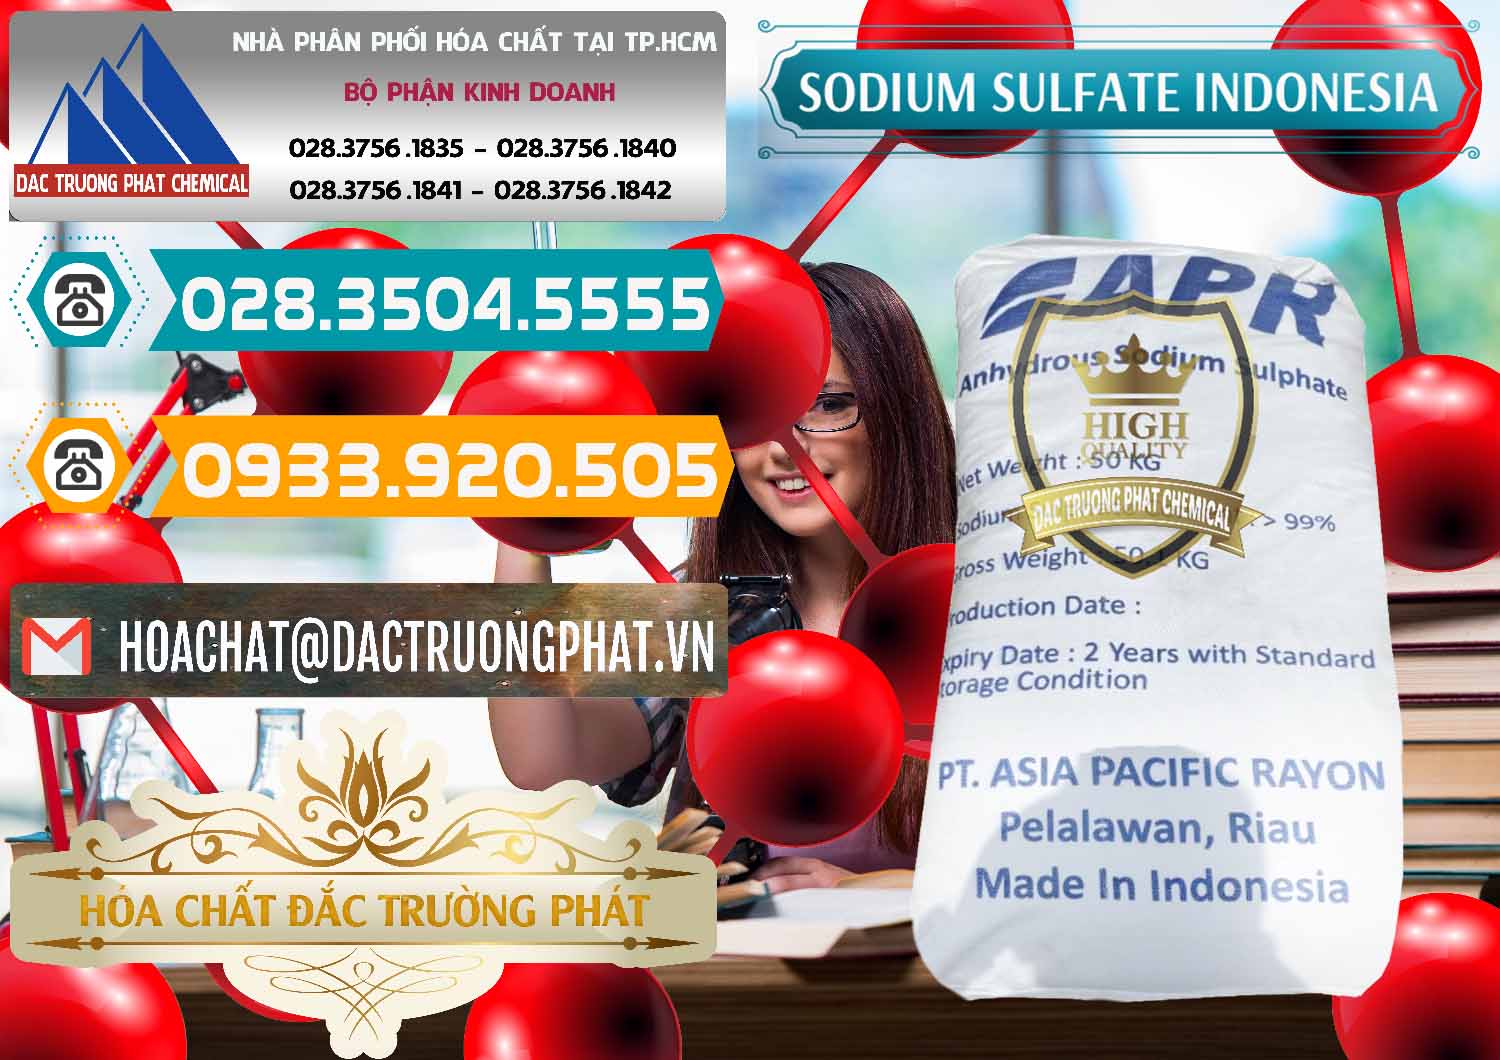 Chuyên cung ứng và bán Sodium Sulphate - Muối Sunfat Na2SO4 APR Indonesia - 0460 - Cty bán ( cung cấp ) hóa chất tại TP.HCM - congtyhoachat.vn